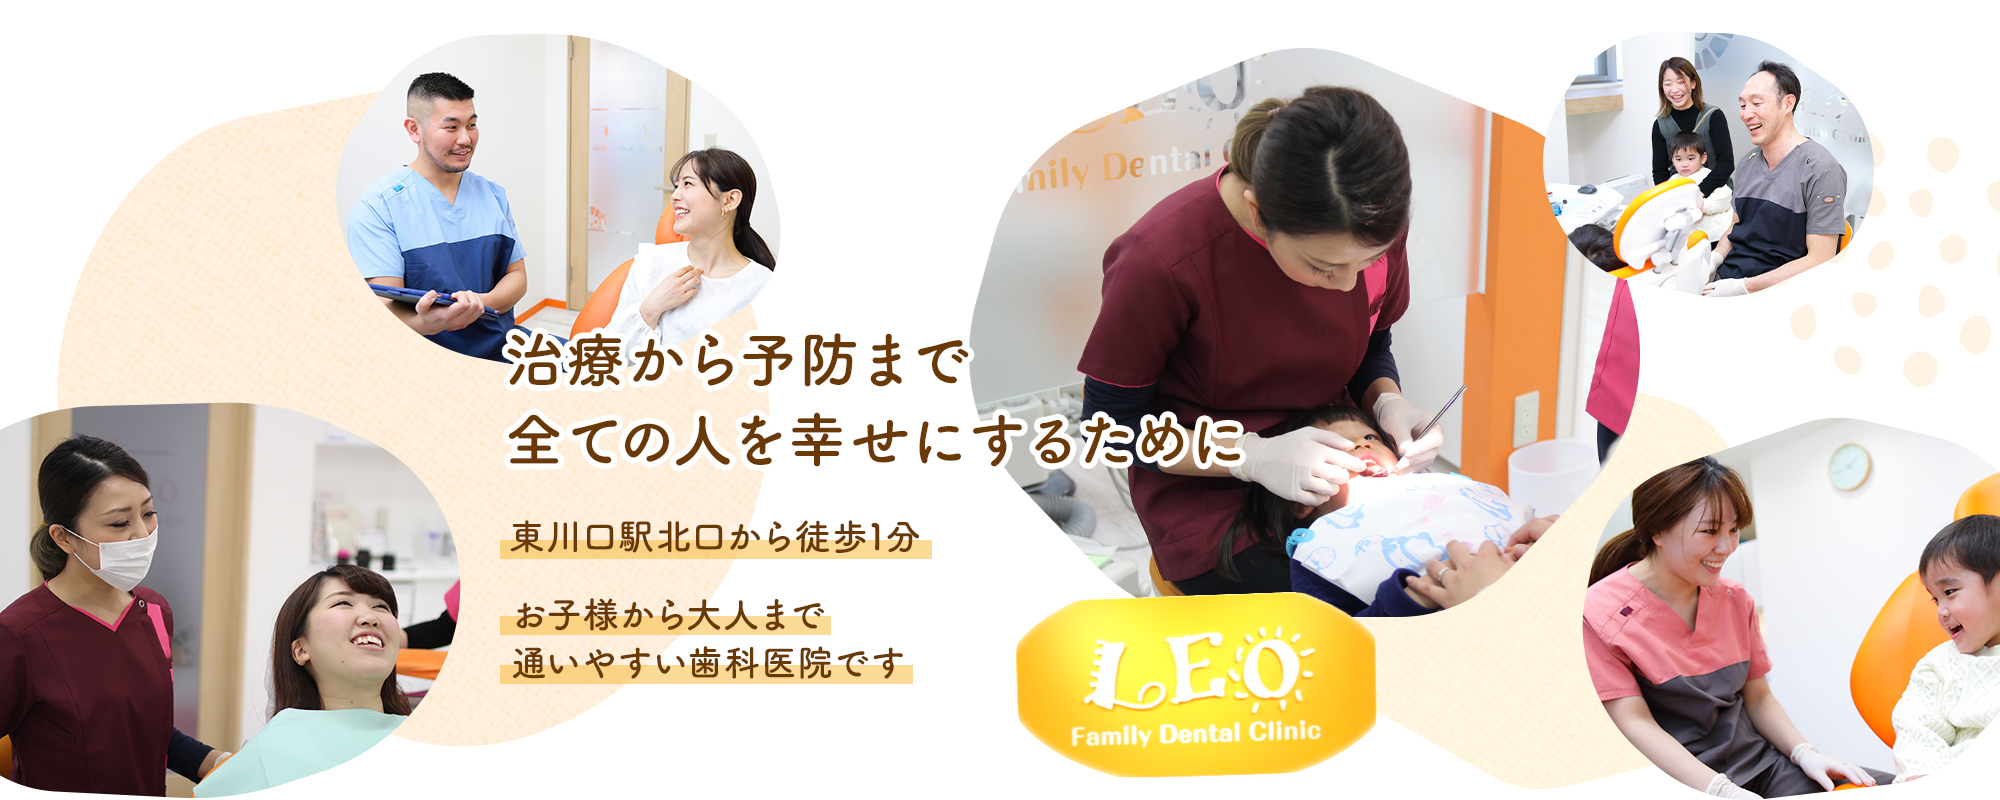 東川口駅北口から徒歩1分の「れおファミリー歯科」は地域密着型の歯医者